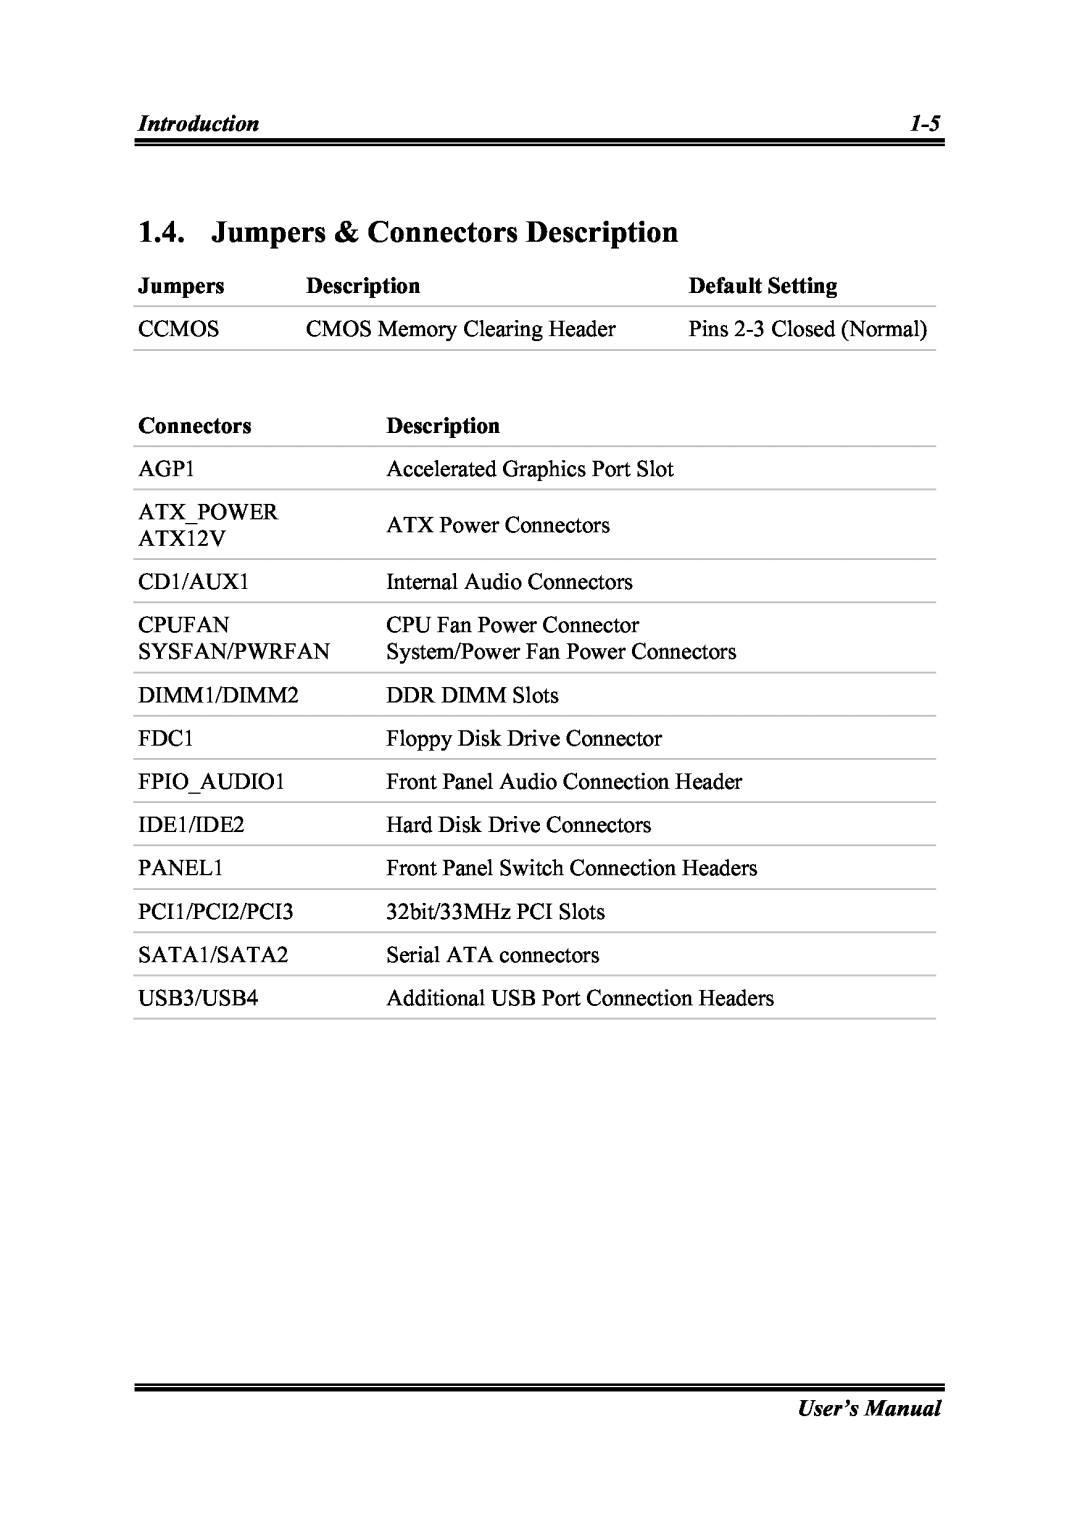 Intel SG-81, SG-80 user manual Jumpers & Connectors Description 